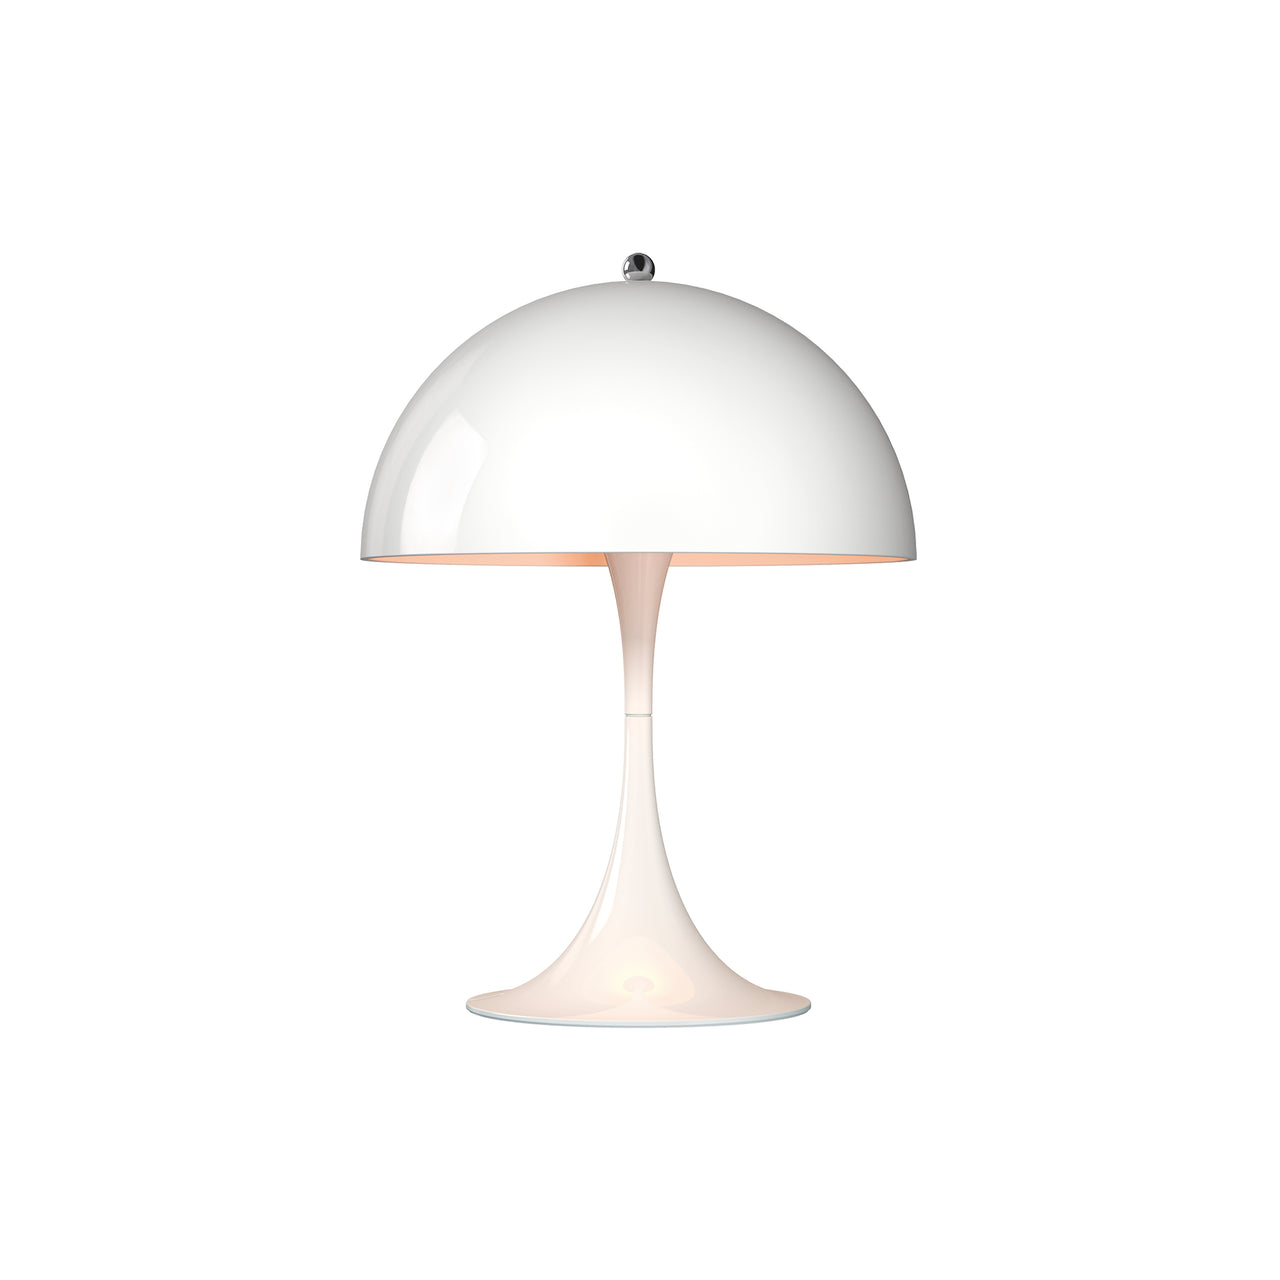 Panthella 250 Table Lamp:  White